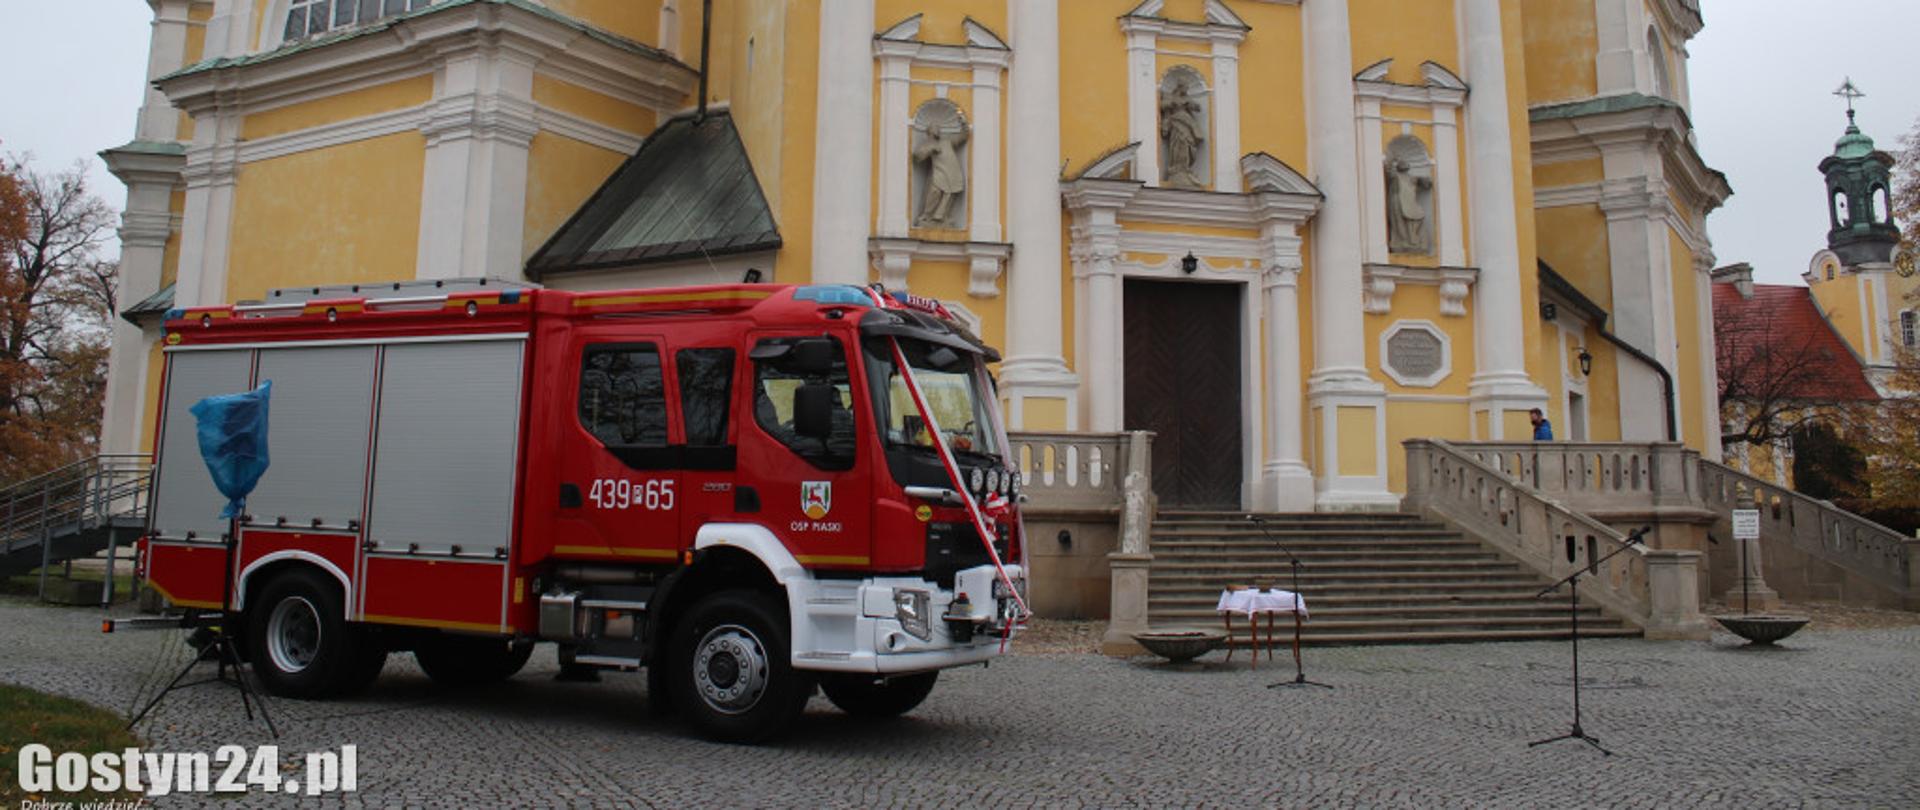 Zdjęcia przedstawia samochód strażacki na tle Bazyliki.